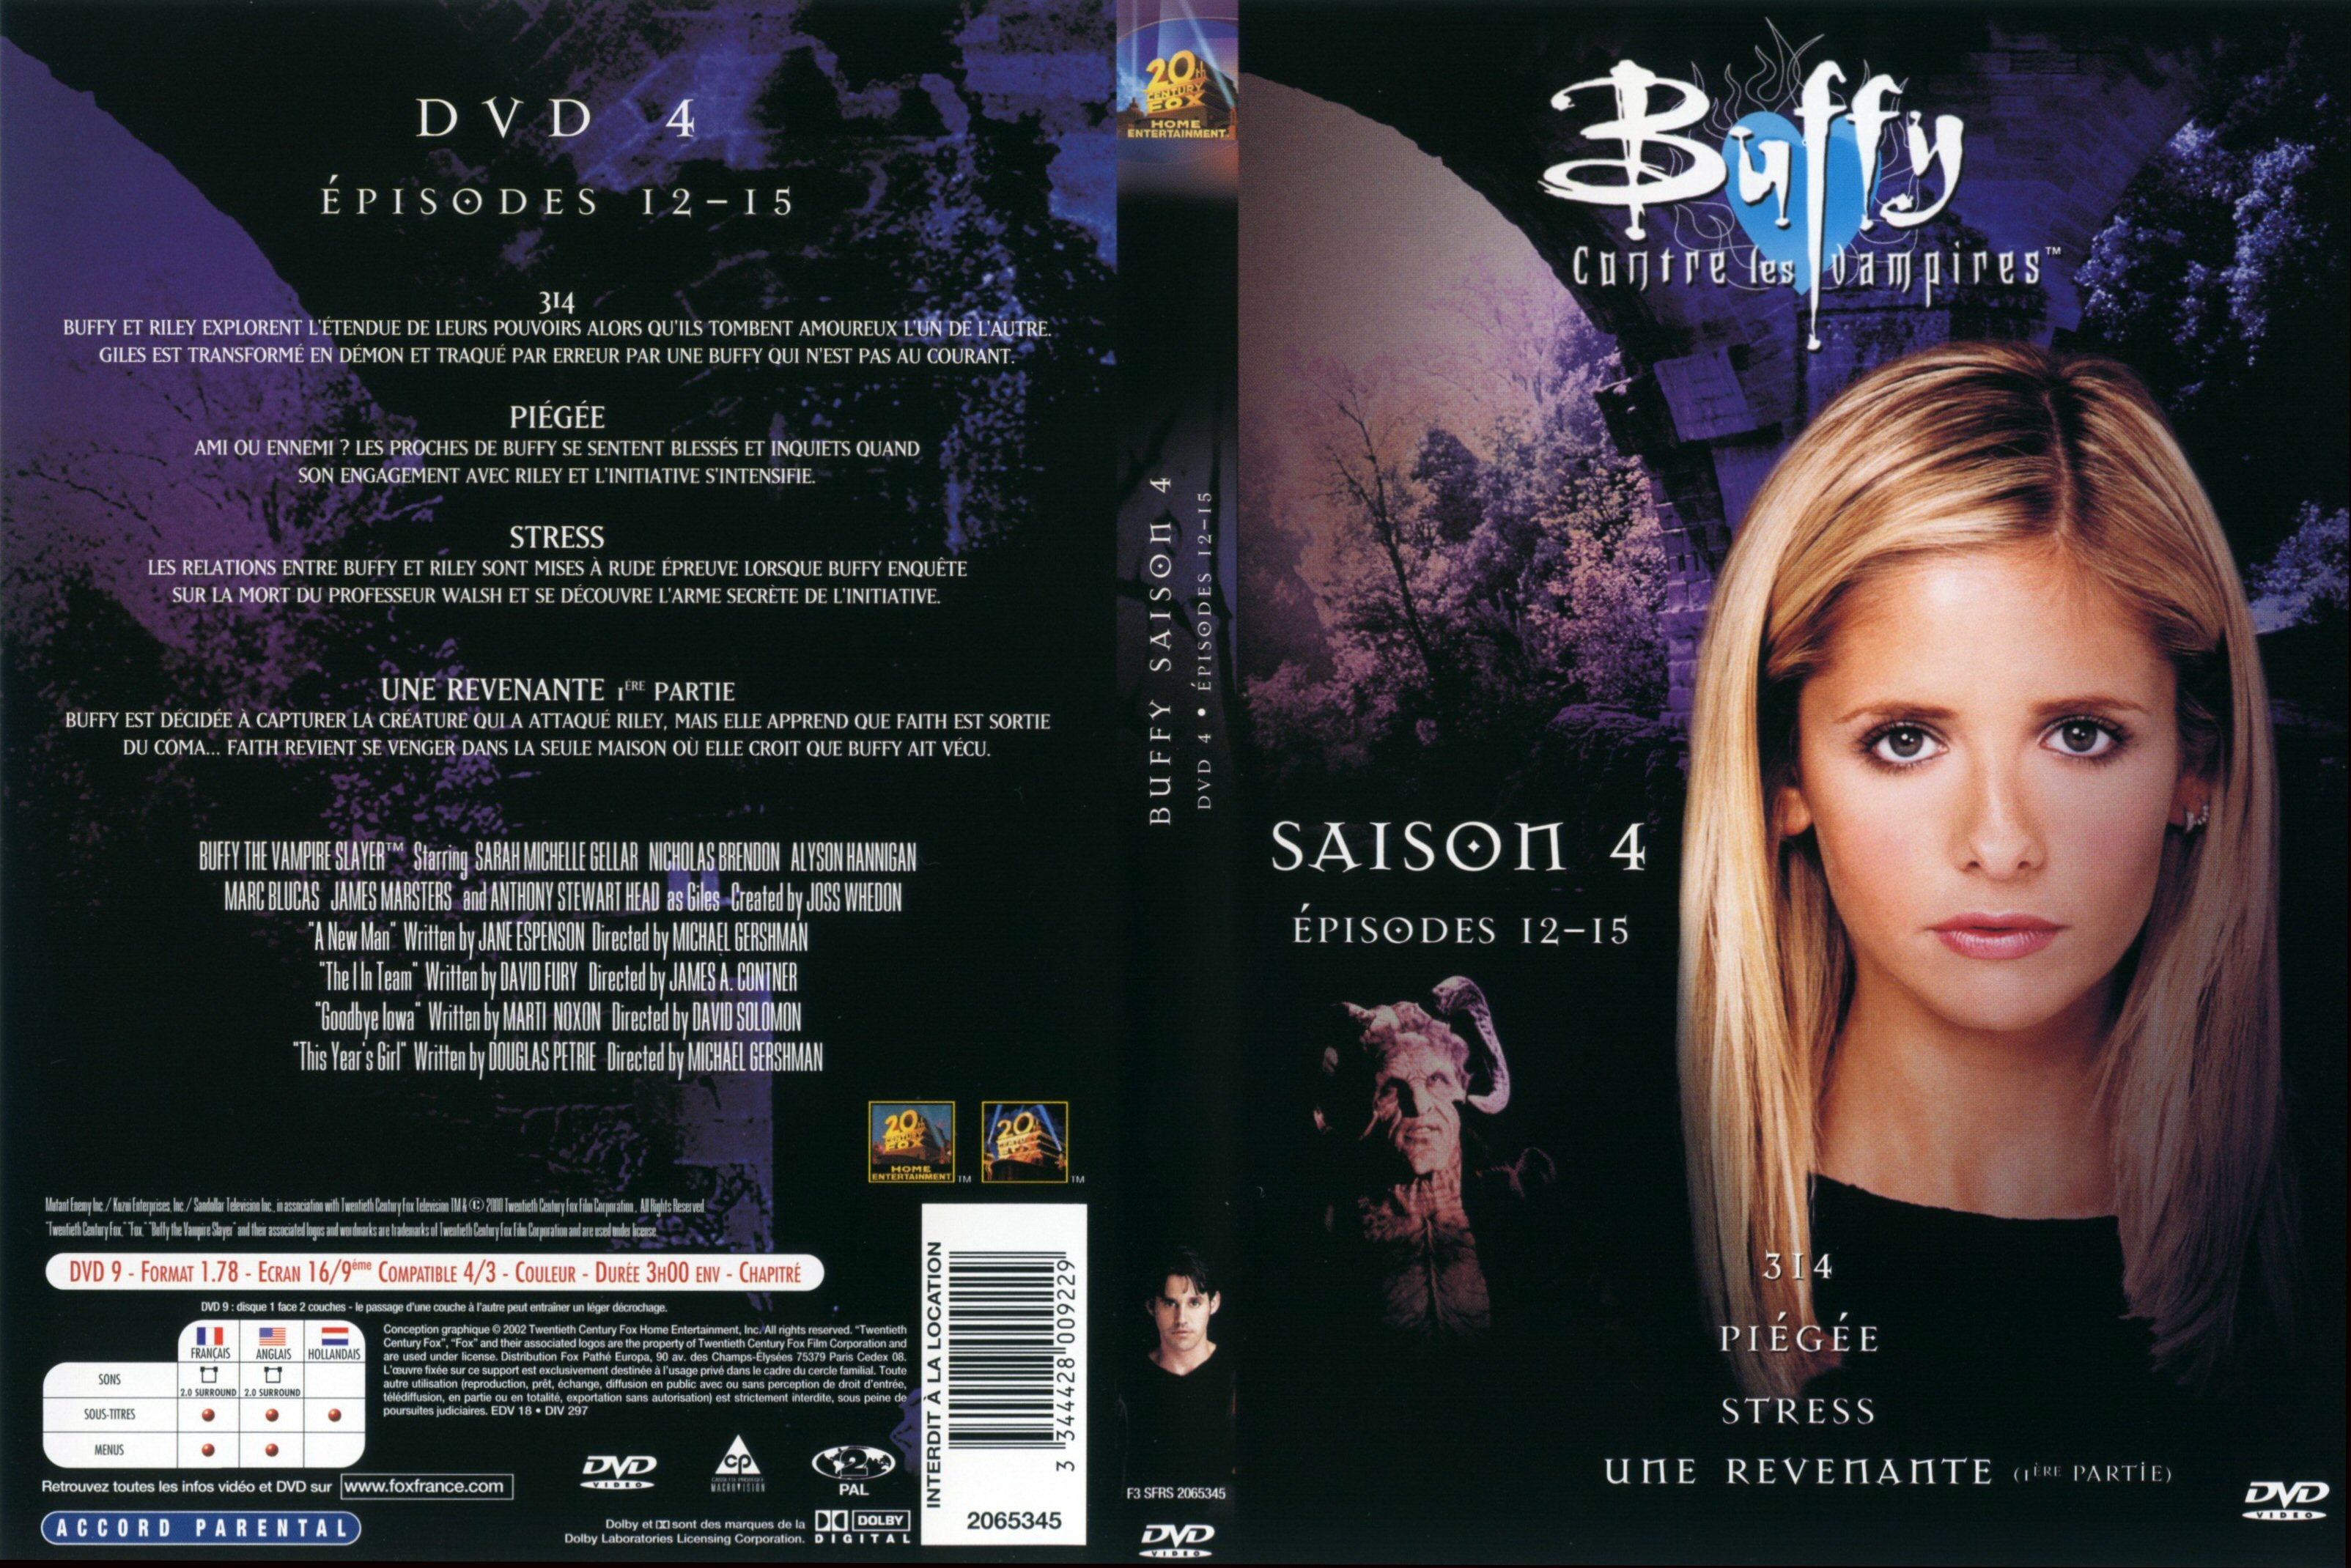 Jaquette DVD Buffy contre les vampires Saison 4 DVD 4